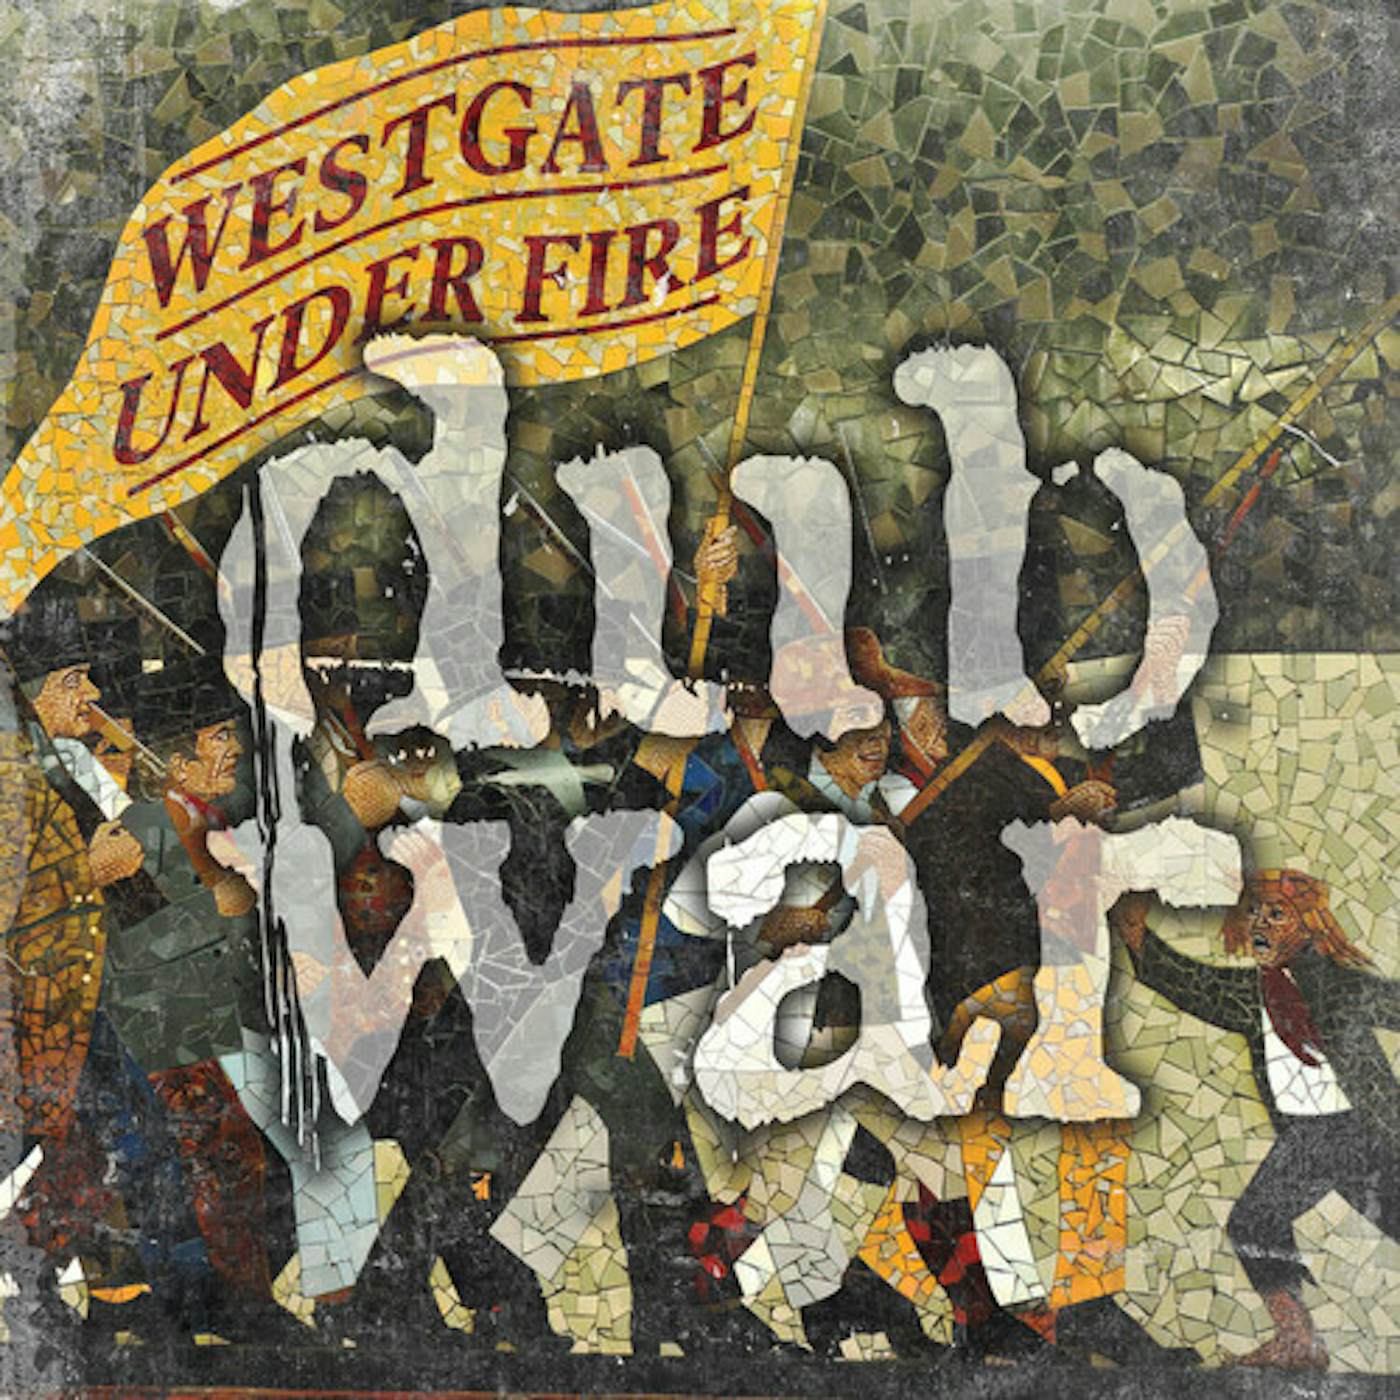 Dub War Westgate Under Fire Vinyl Record